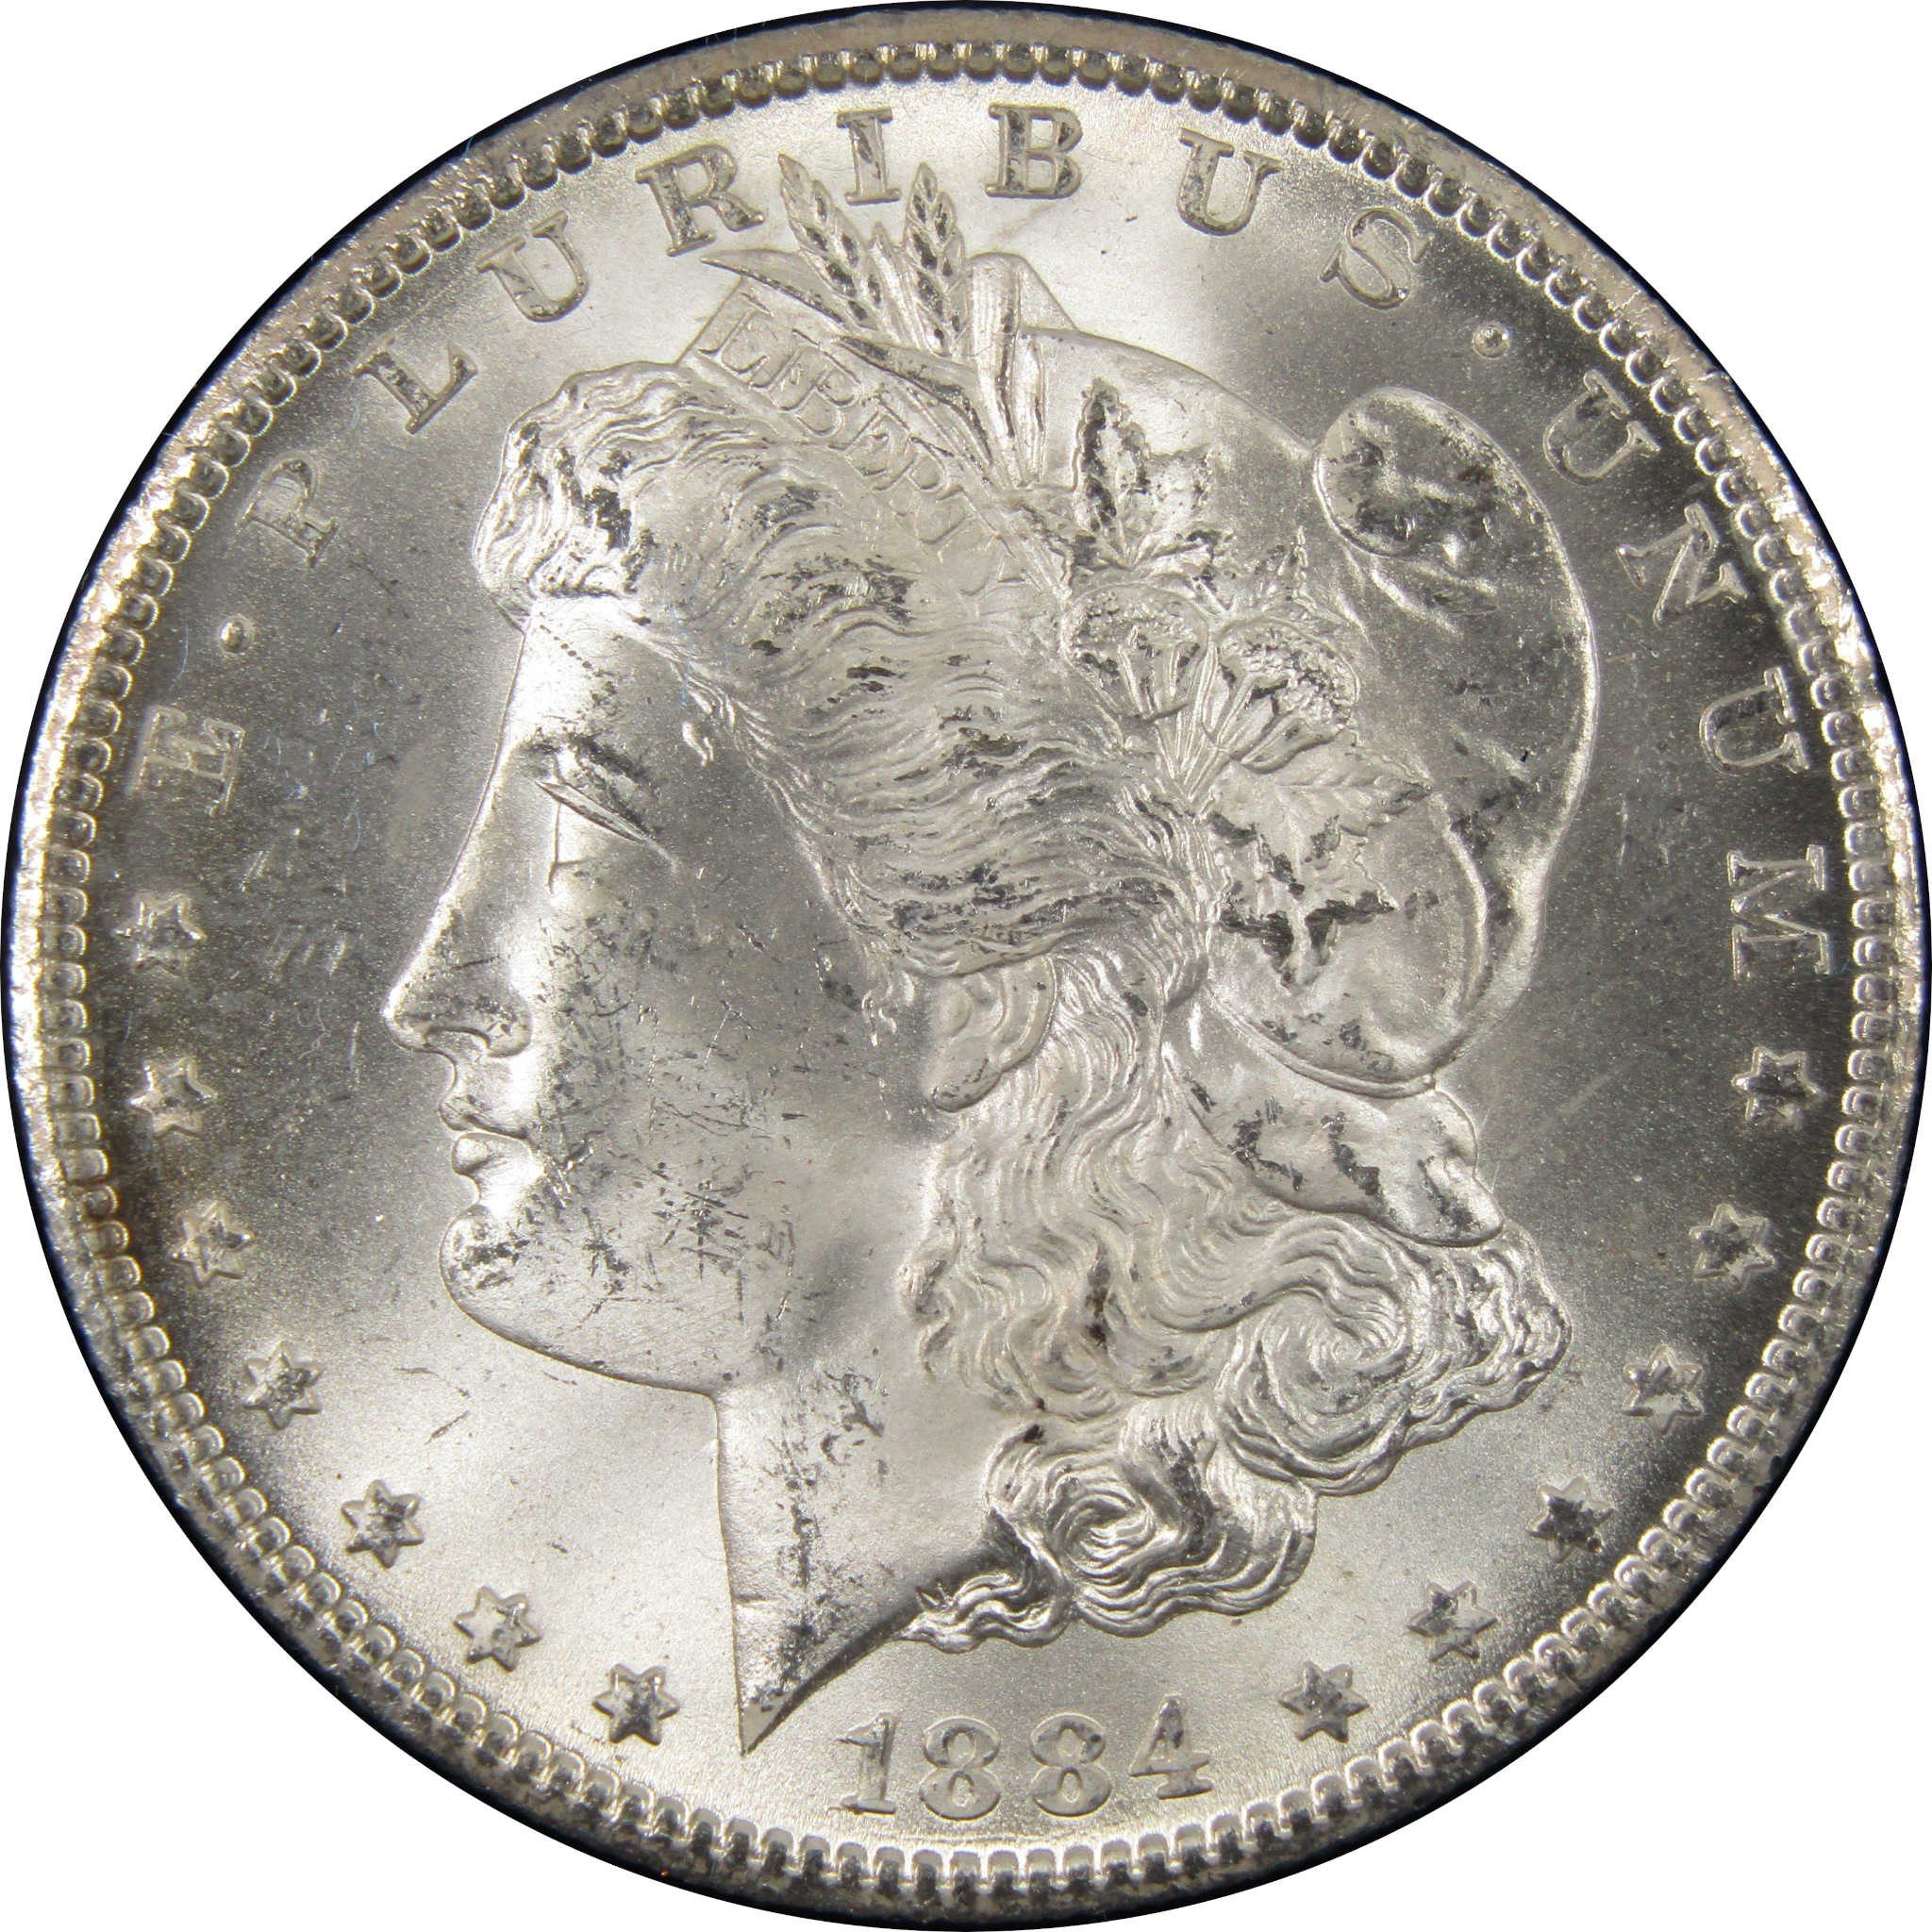 1884 CC GSA Morgan Dollar BU Uncirculated Silver $1 Coin SKU:I9858 - Morgan coin - Morgan silver dollar - Morgan silver dollar for sale - Profile Coins &amp; Collectibles